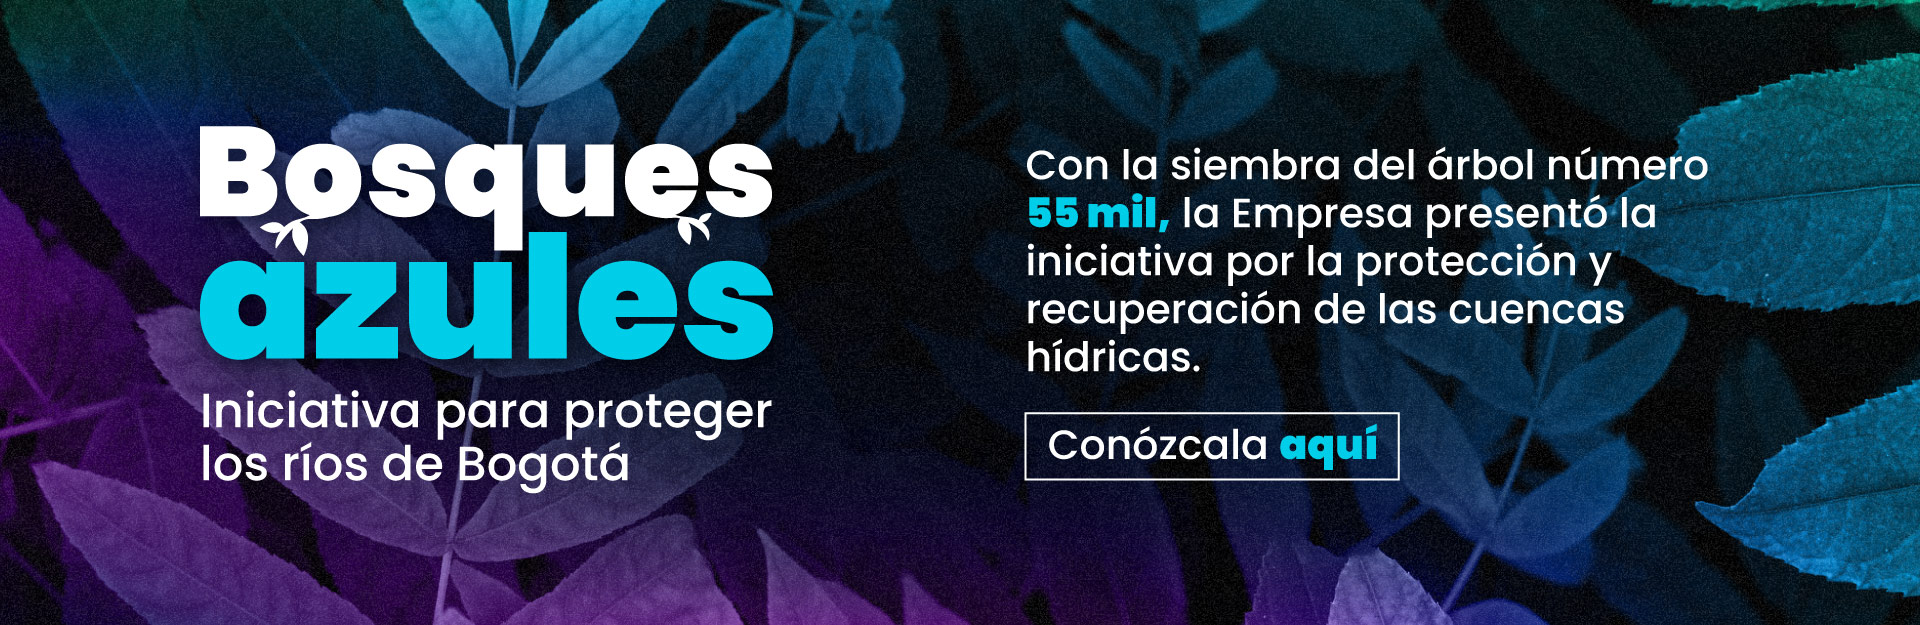 Bosques Azules: iniciativa para proteger los ríos de Bogotá